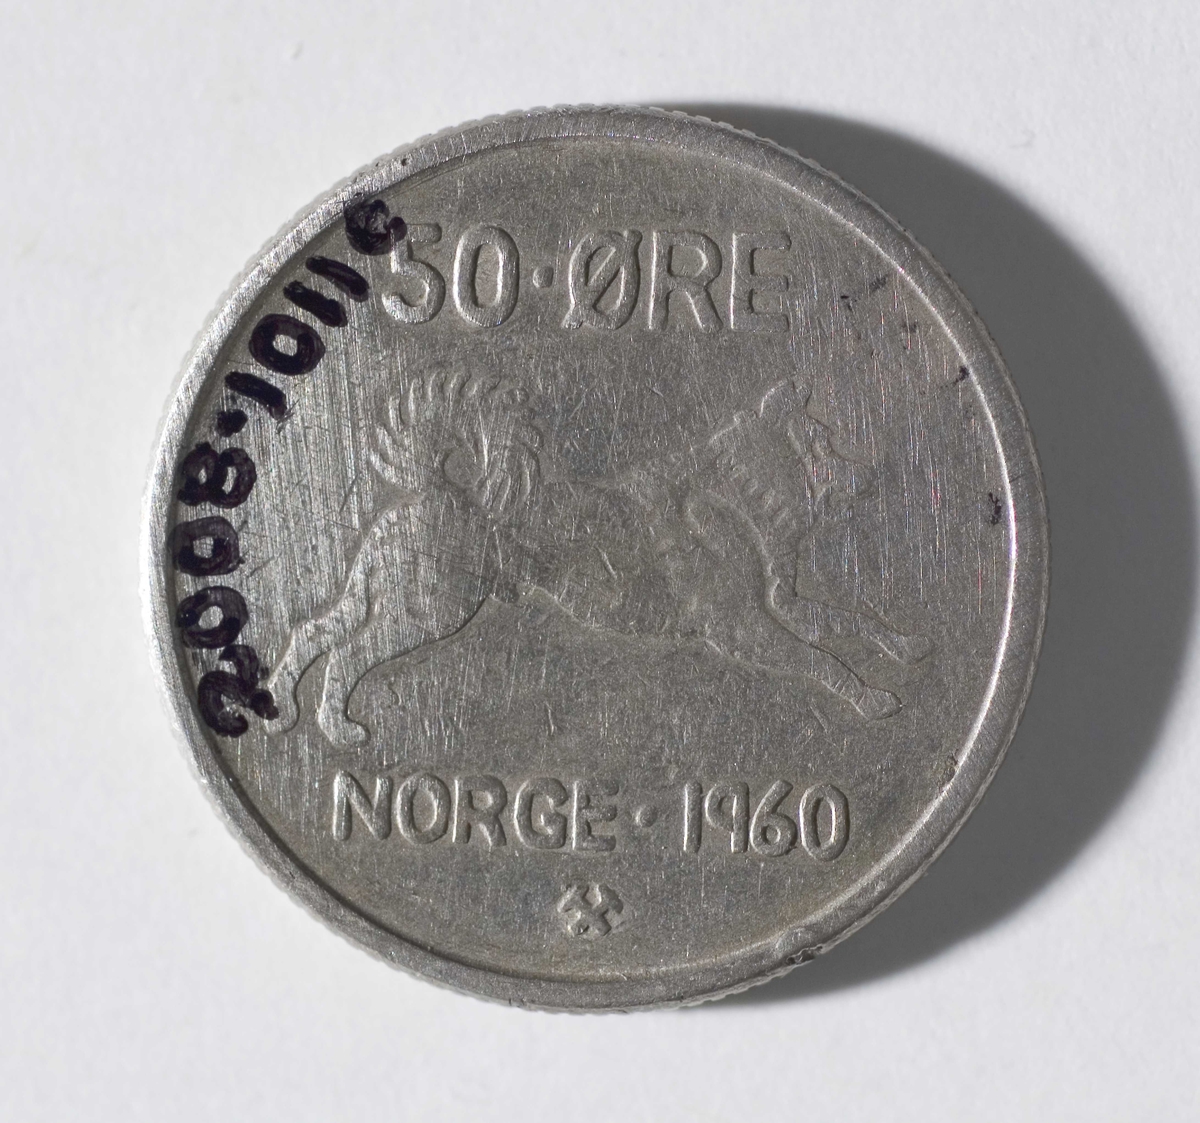 2-øre, datert 1964, med kong Olav den femtes monogram